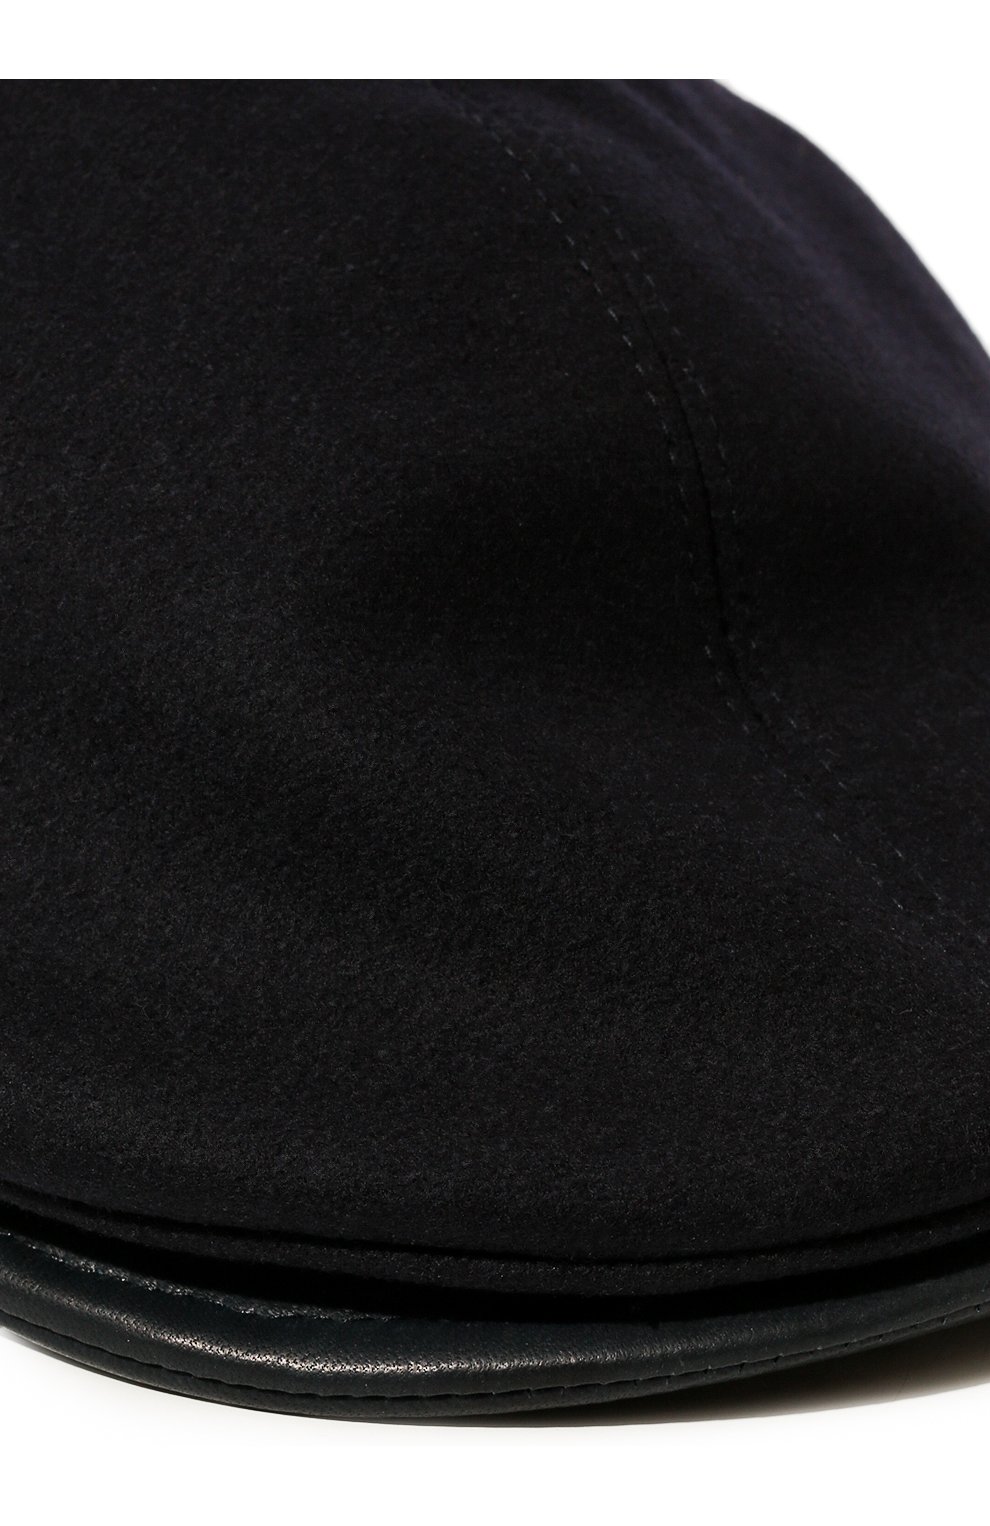 Мужская кепи из шерсти и кашемира GIORGIO ARMANI темно-синего цвета, арт. 747360/1A511 | Фото 4 (Материал: Текстиль, Шерсть)